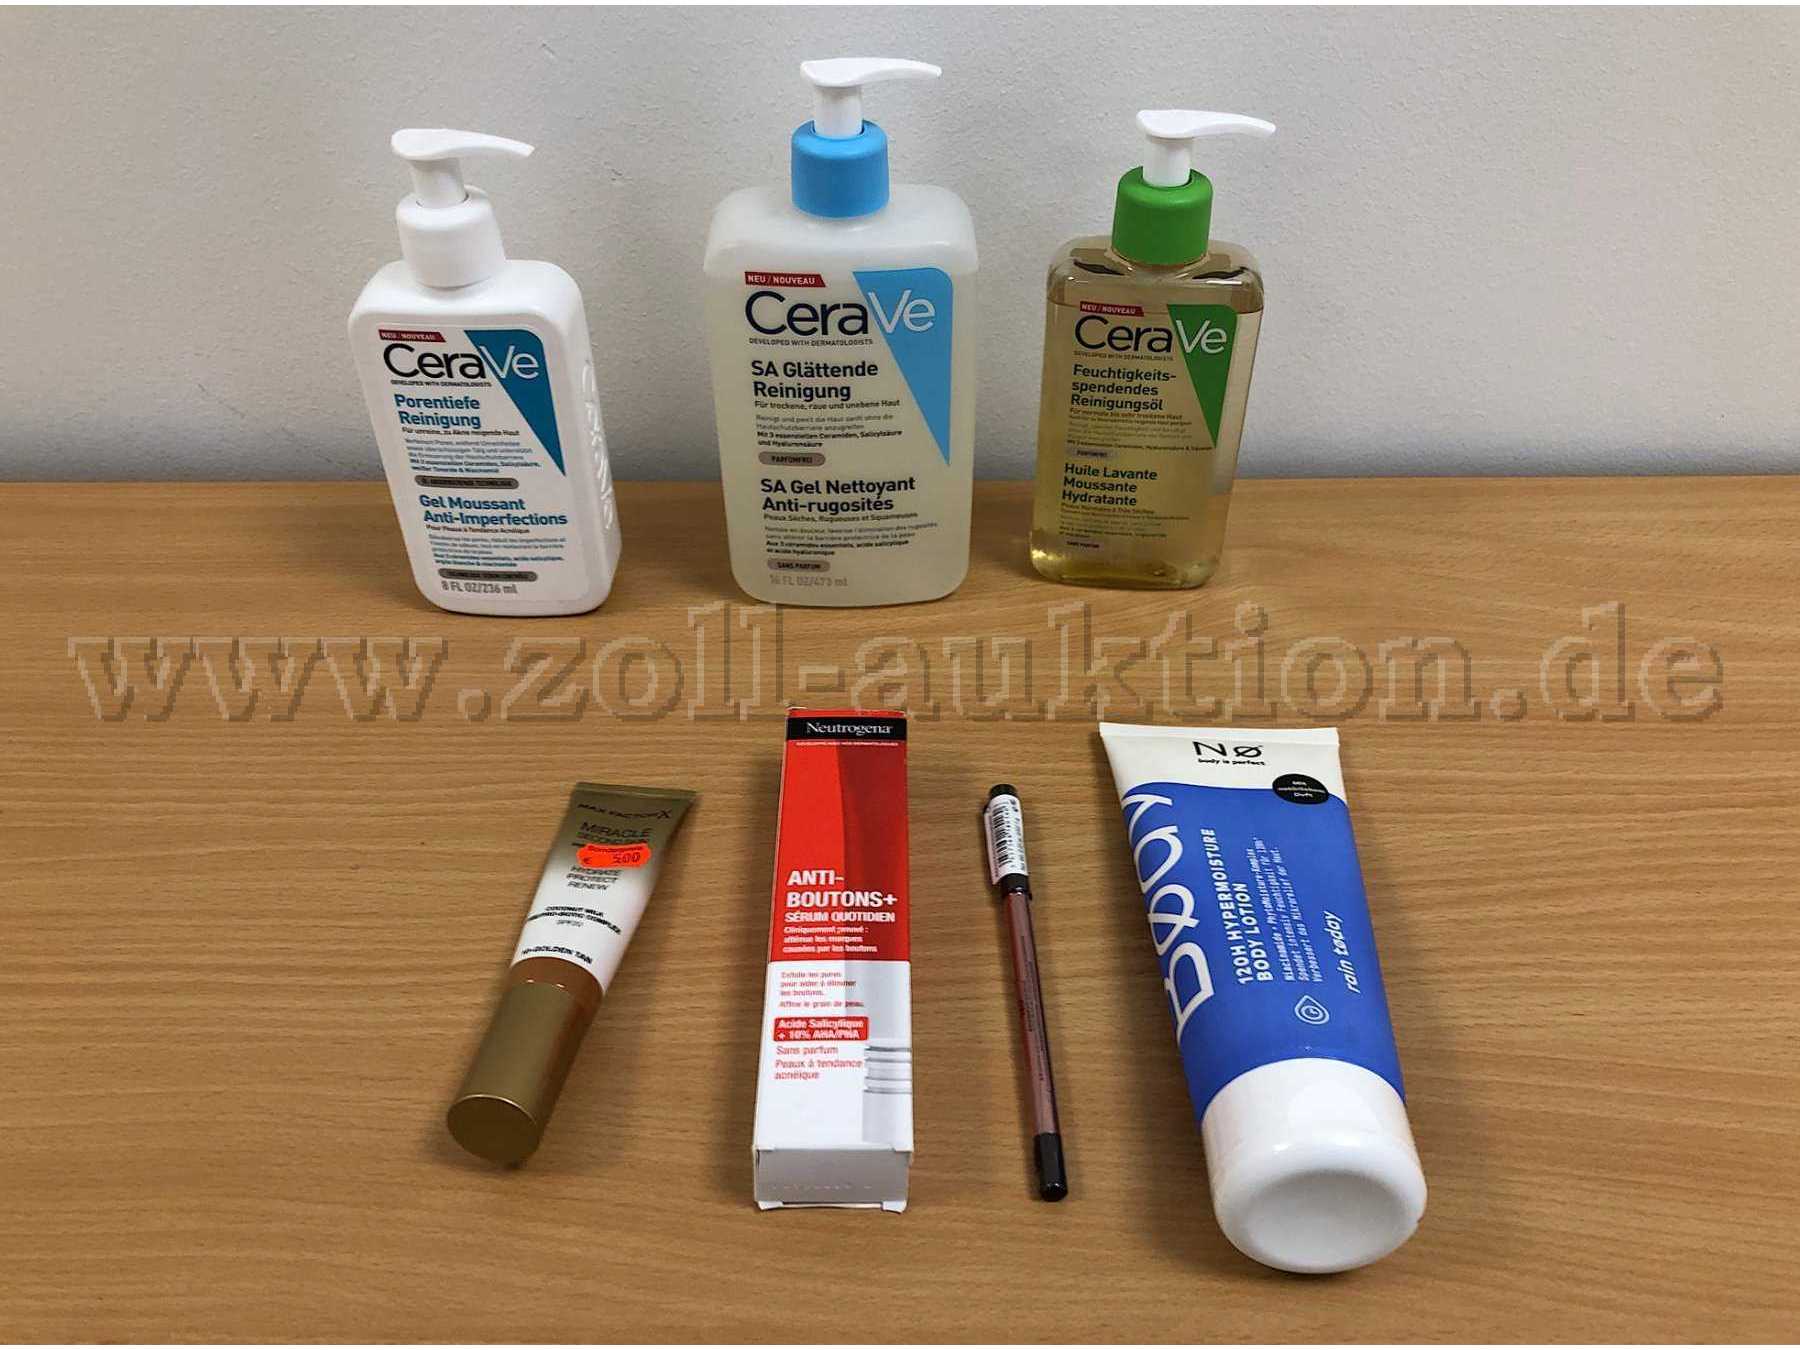 CeraVe-Produkte, Make Up-Foundation, Anti-Pickel-Serum von Neutrogena, Lippenkonturenstift, Bodylotion